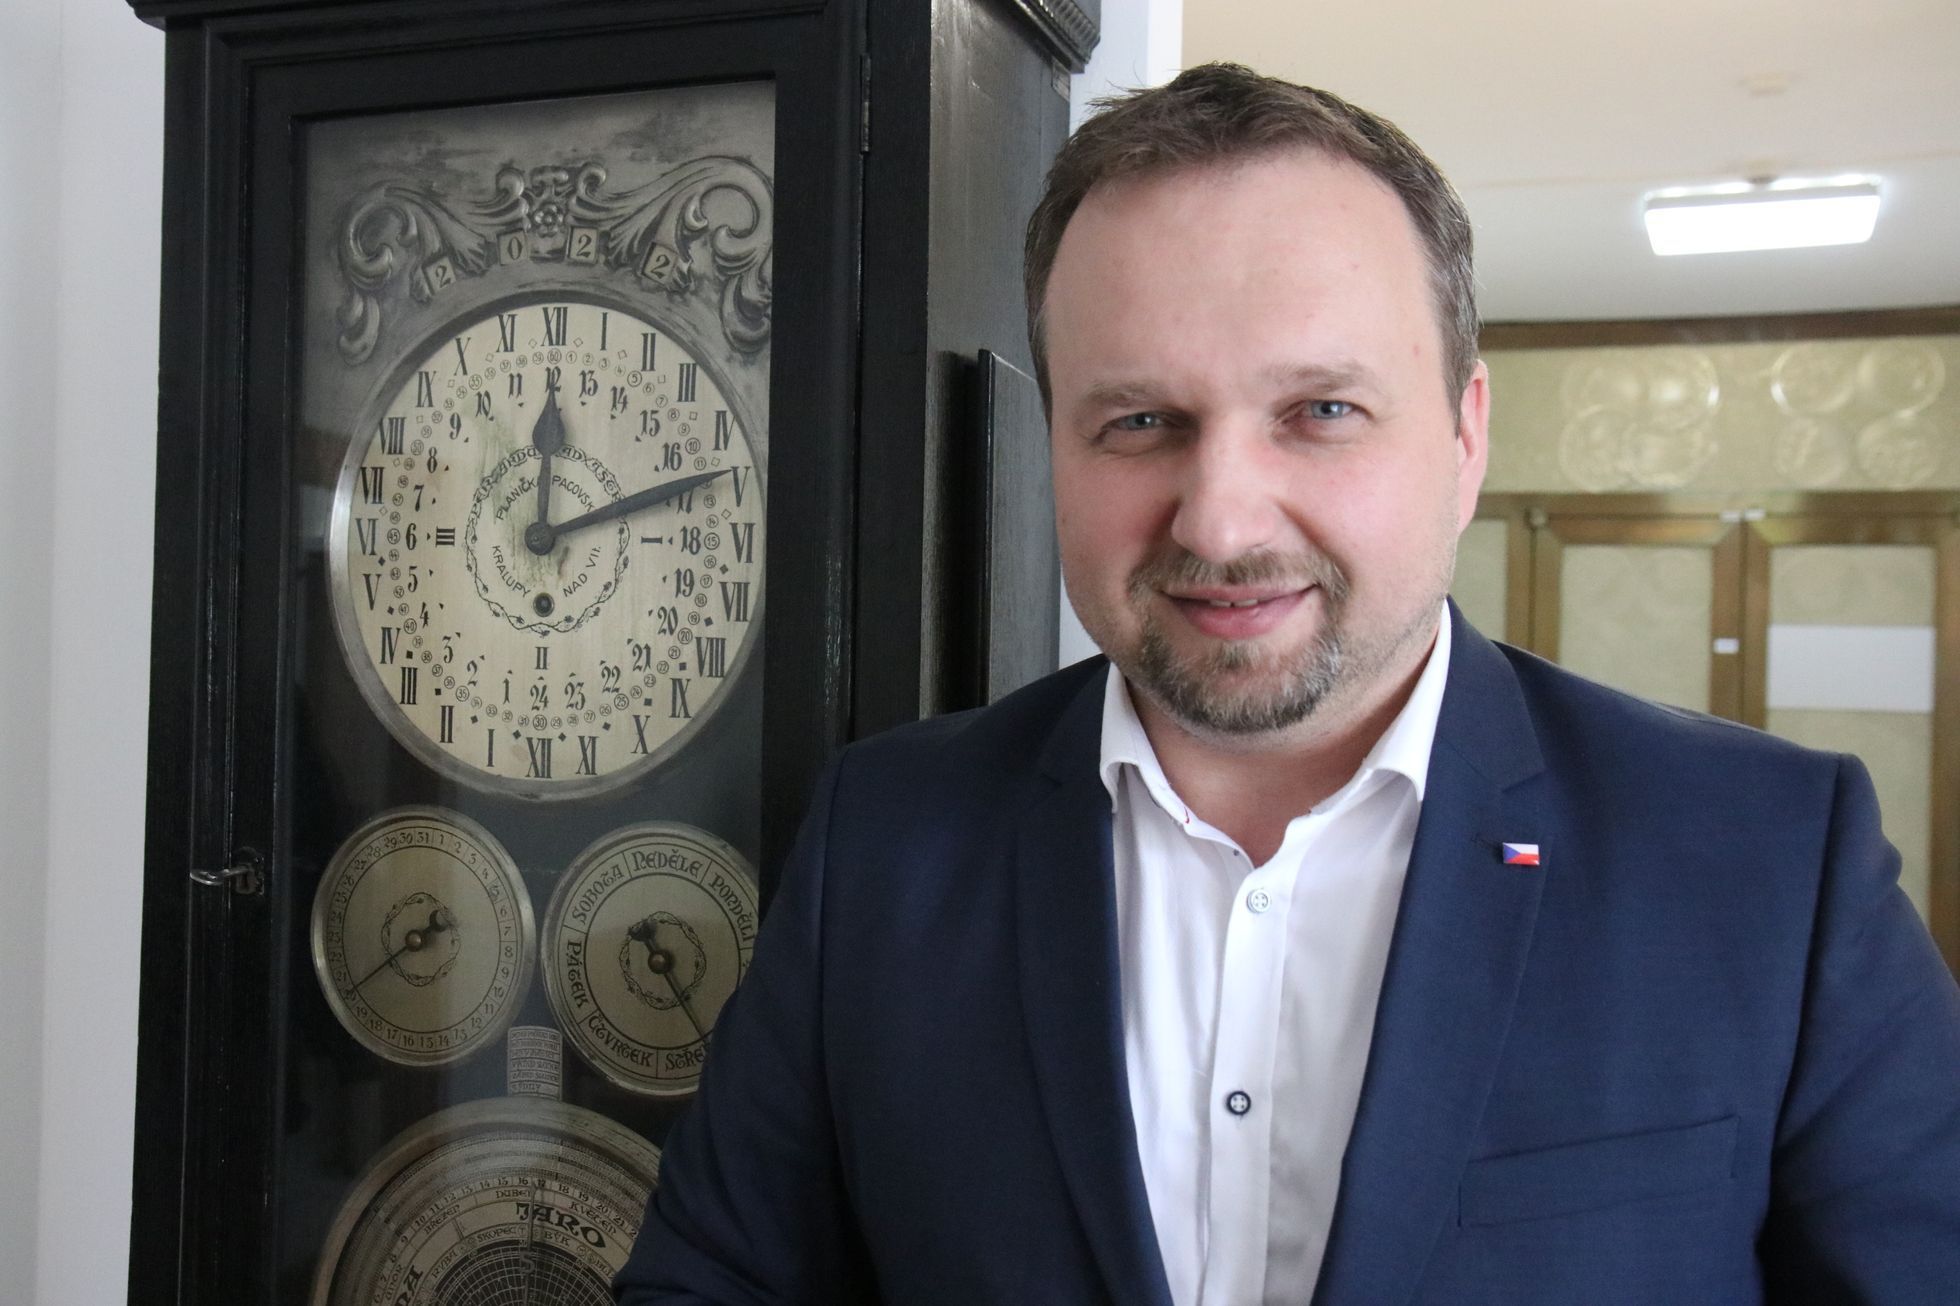 Ministr práce a sociálních věcí Marian Jurečka v rozhovoru pro Aktuálně.cz před historickými hodinami na jeho úřadu.